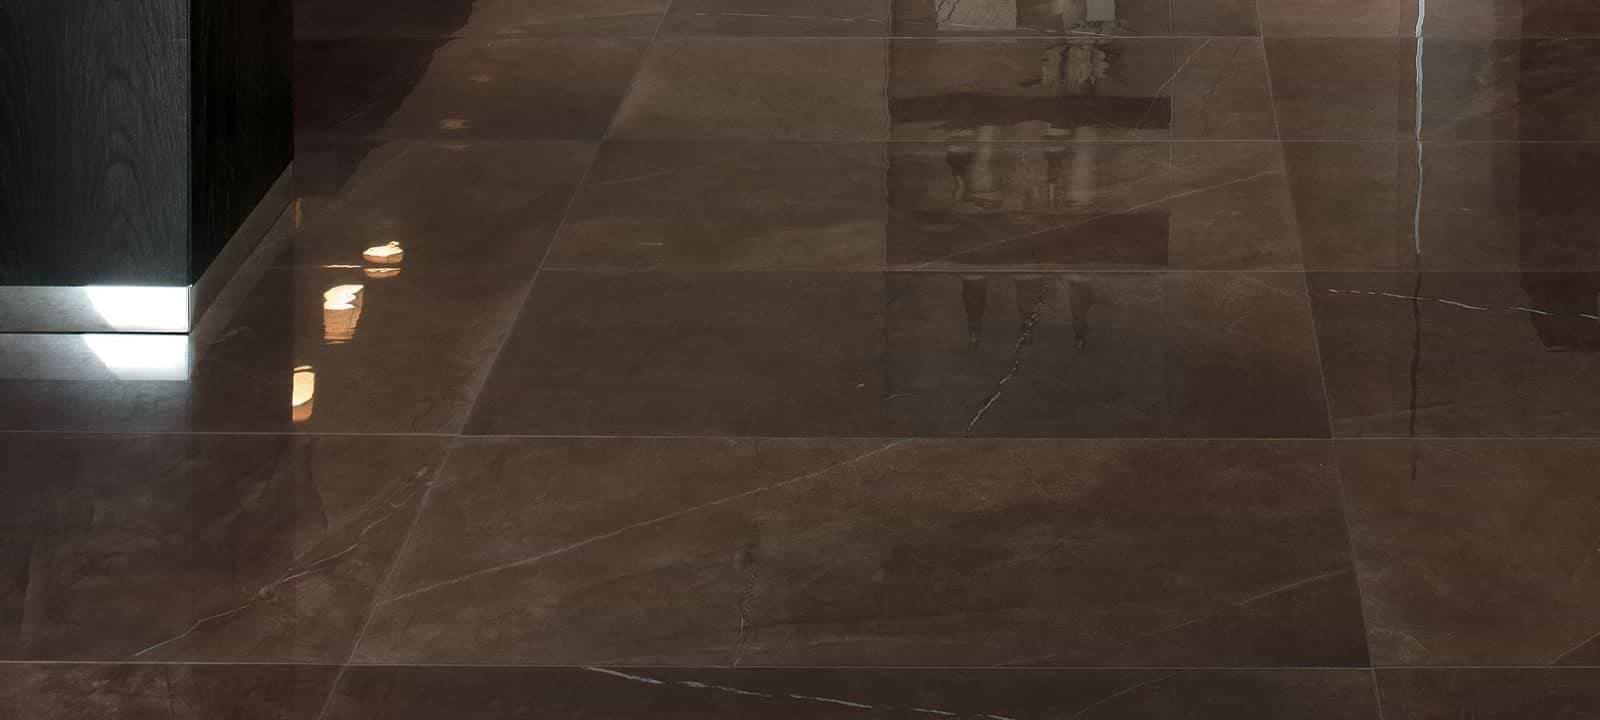 Minoli Wall & Floor Tiles 30 x 60 x 0.9cm Marvel Bronze Luxury Lappato 30 x 60cm